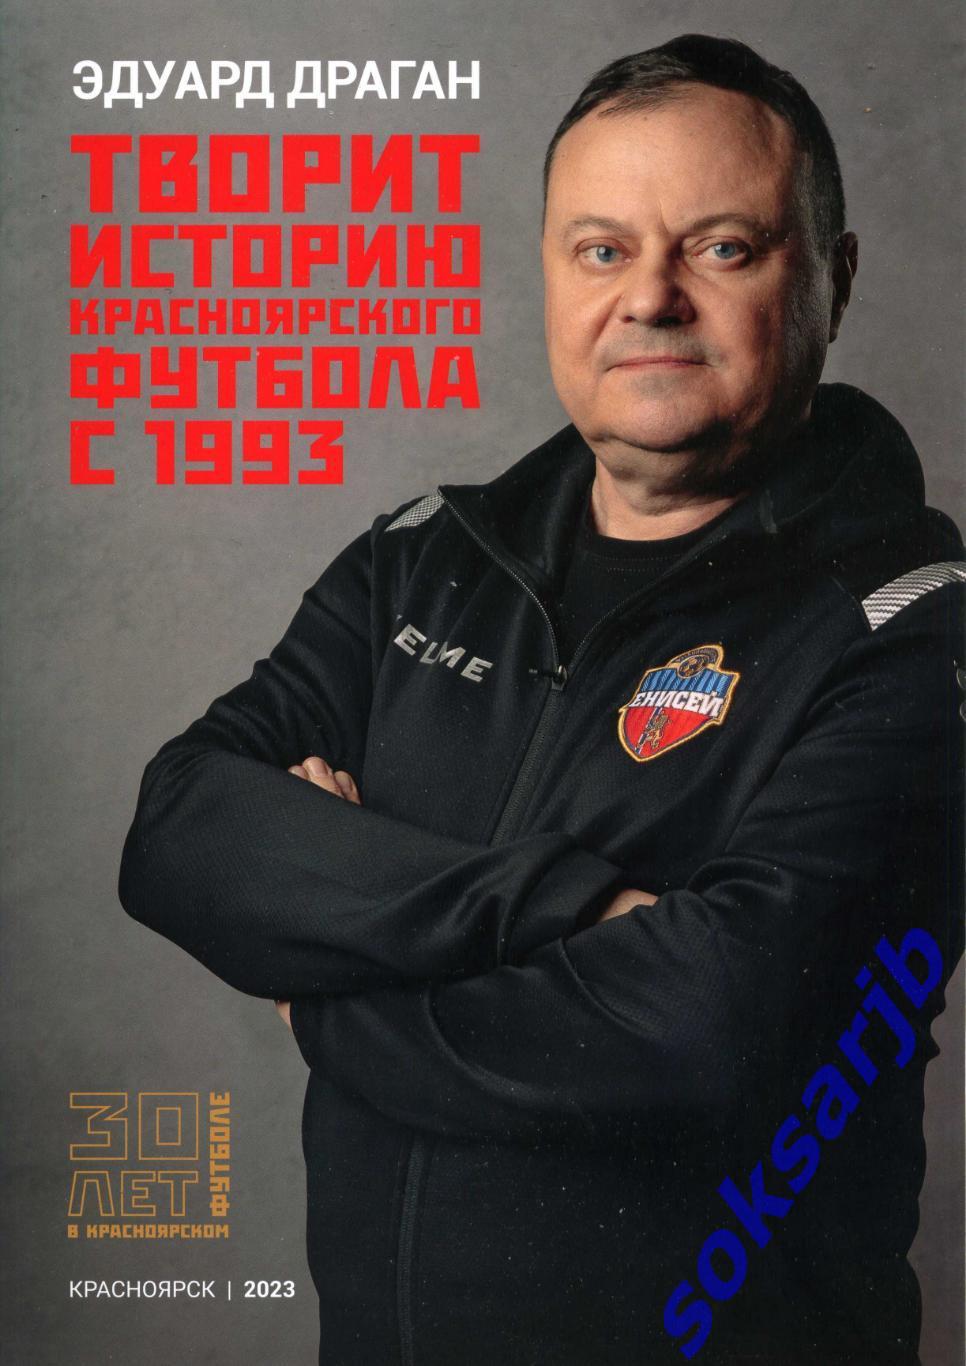 2023. Эдуард Драган творит историю Красноярского футбола с 1993 года.